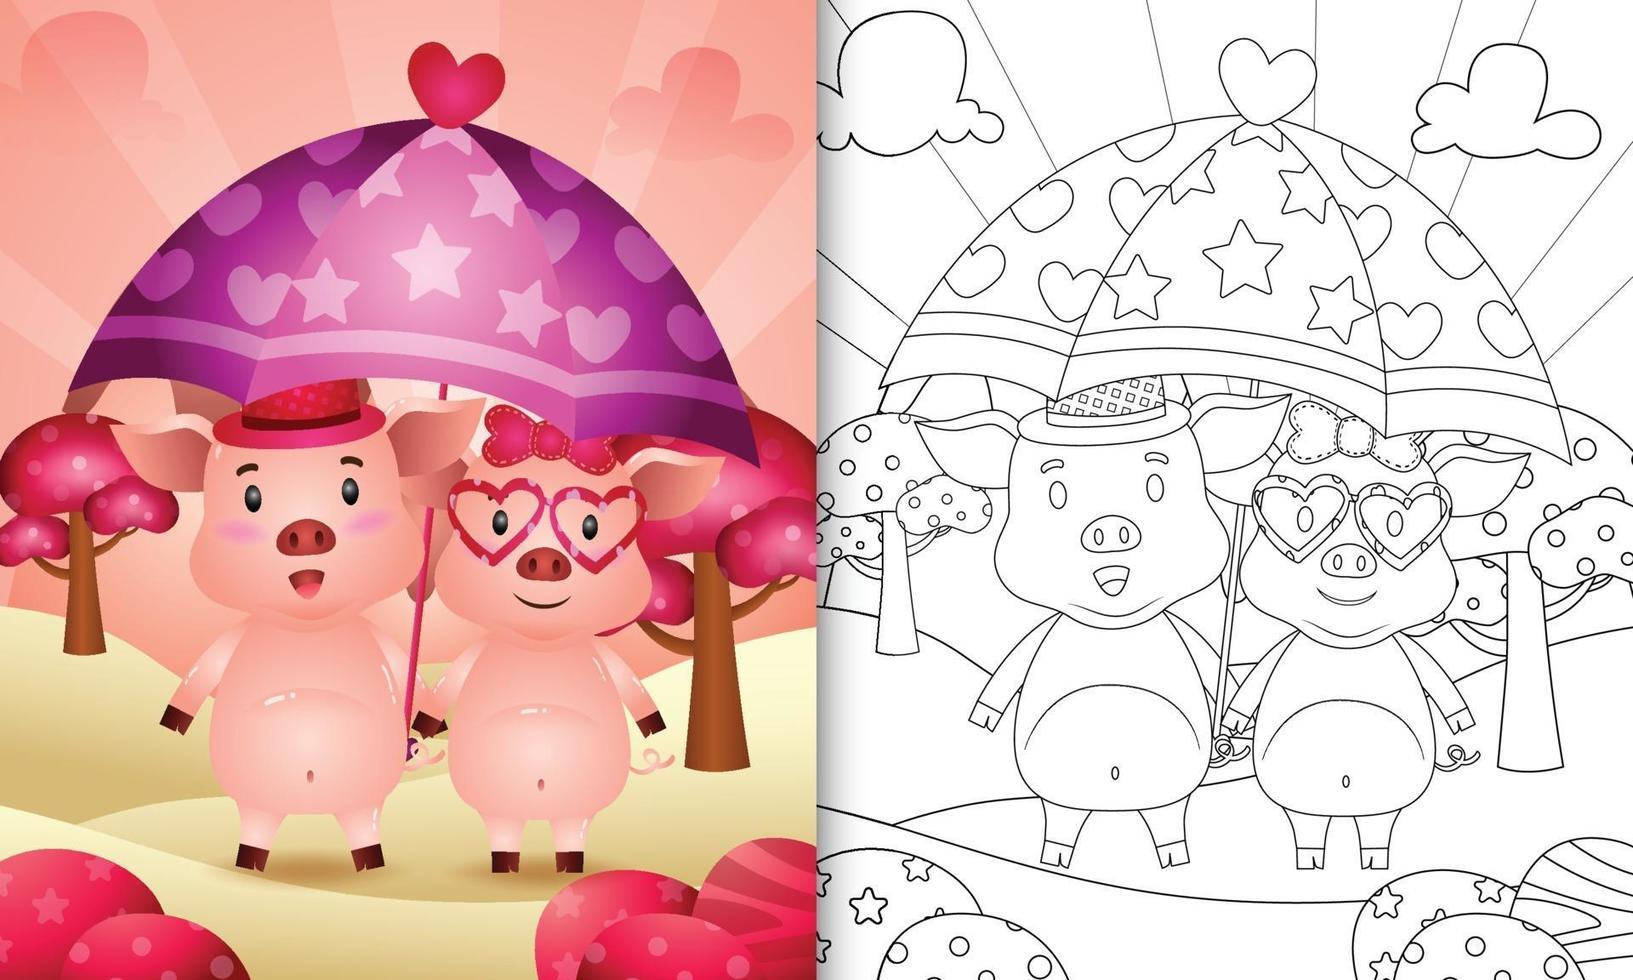 livro de colorir para crianças com um casal de porcos segurando guarda-chuva com o tema do dia dos namorados vetor